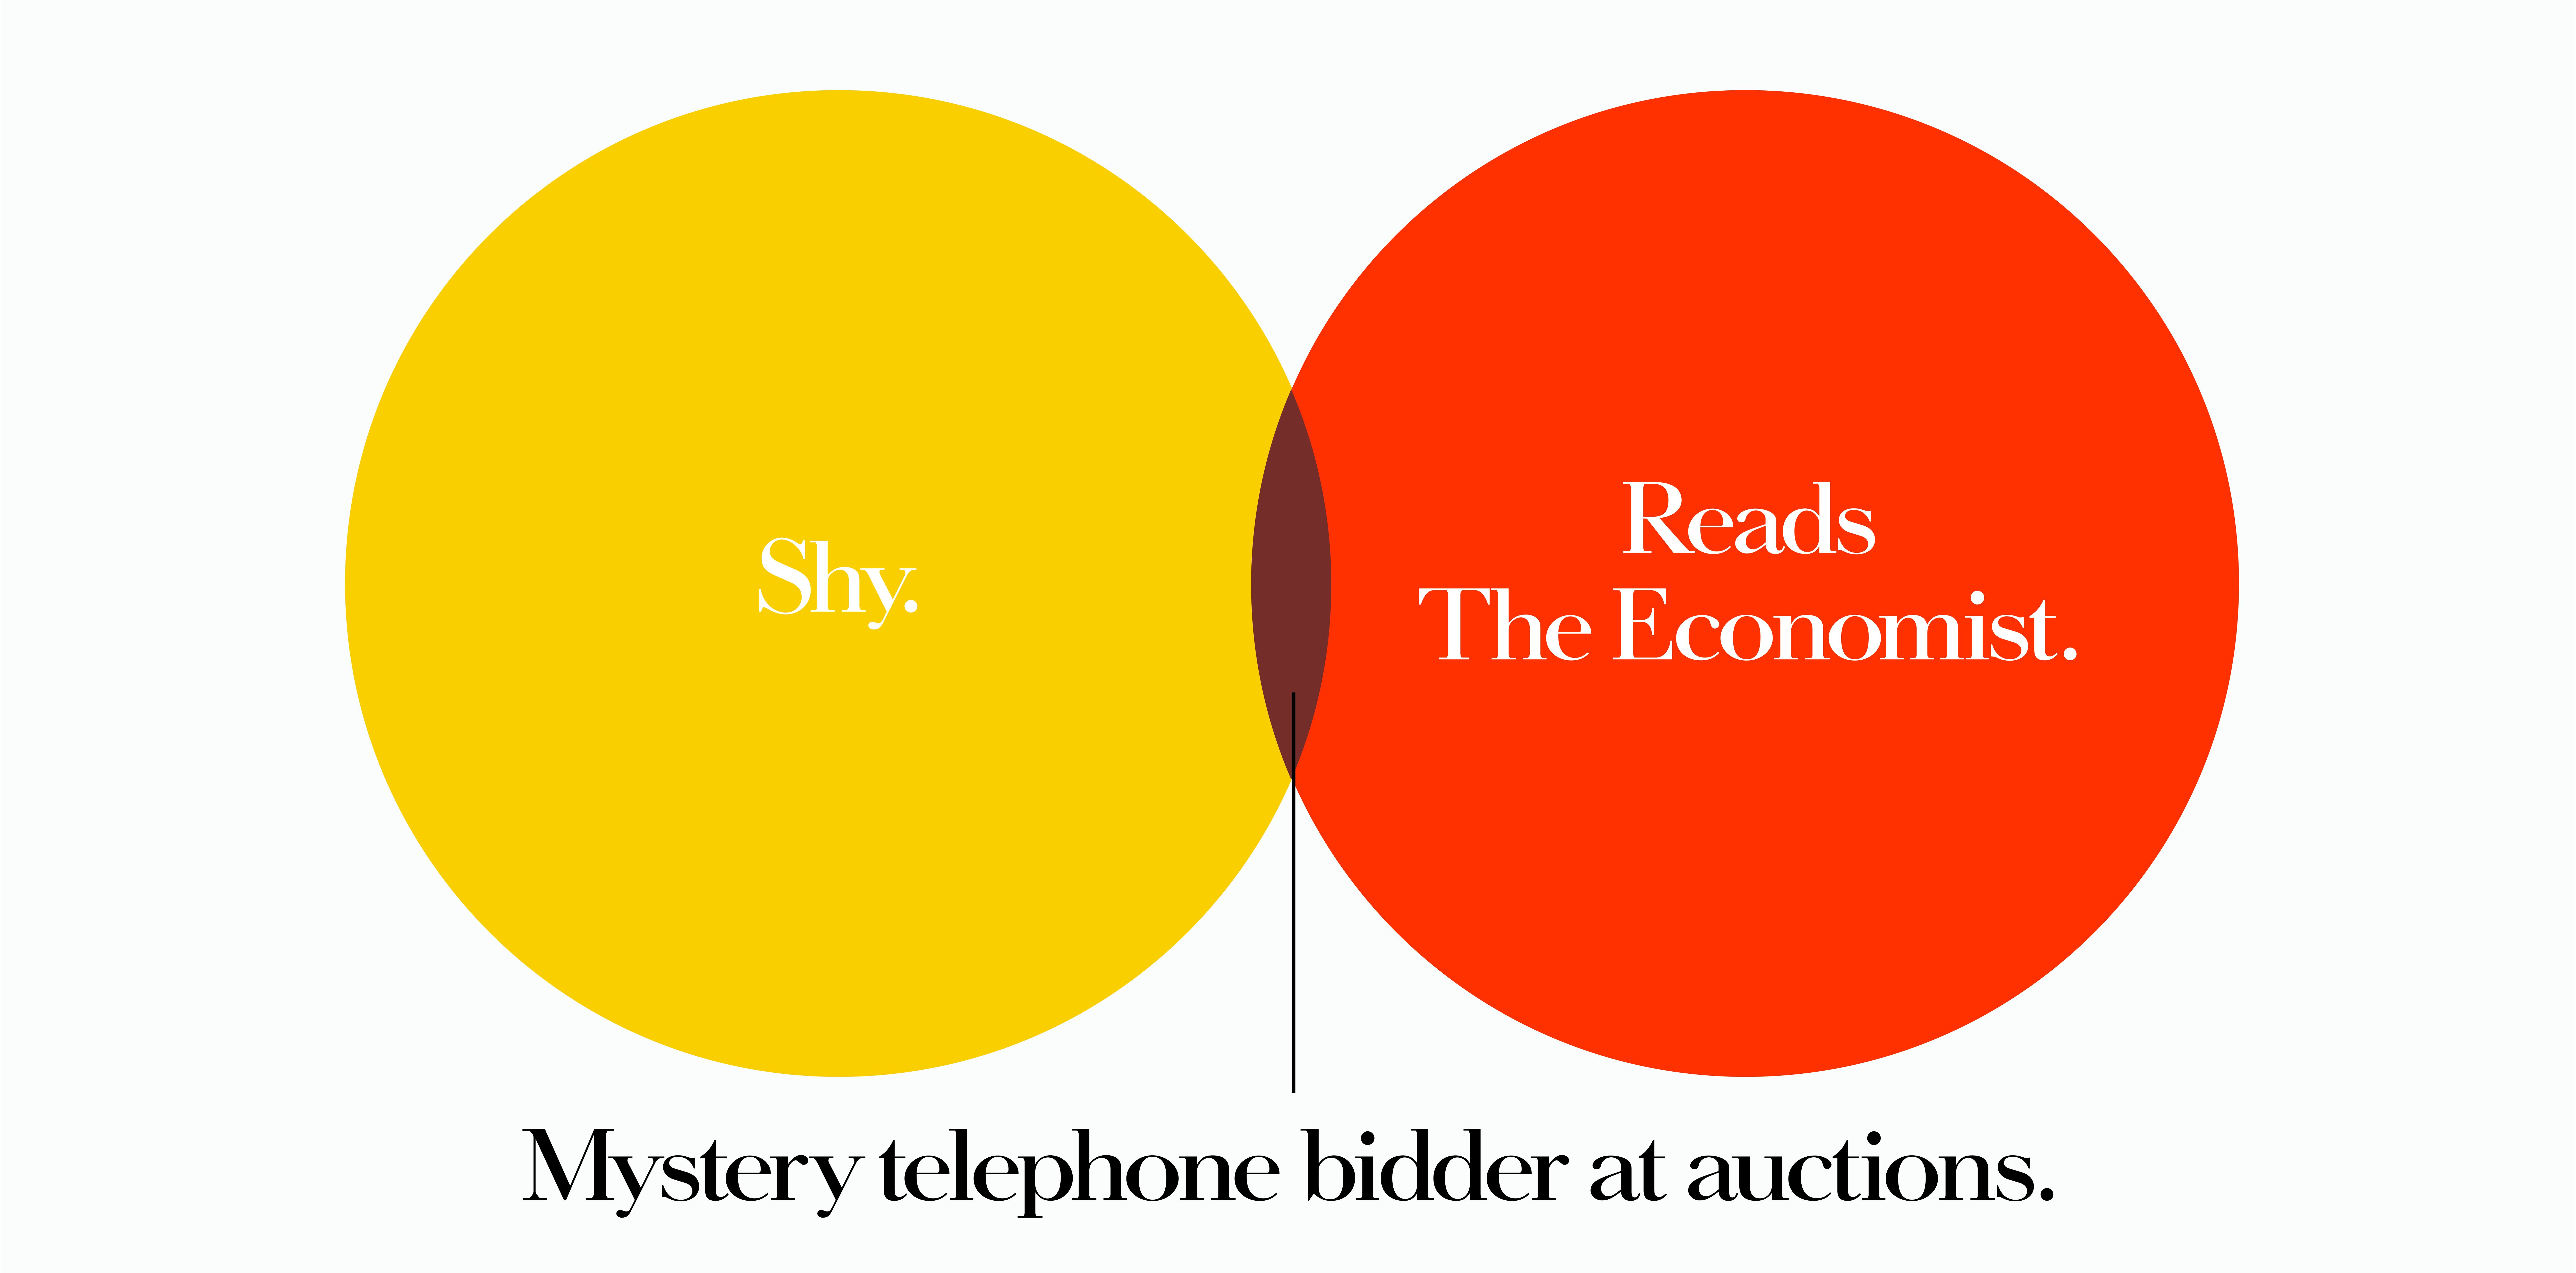 'Shy' The Economist, Dave Dye, Venn, 48 sheet, AMV-BBDO